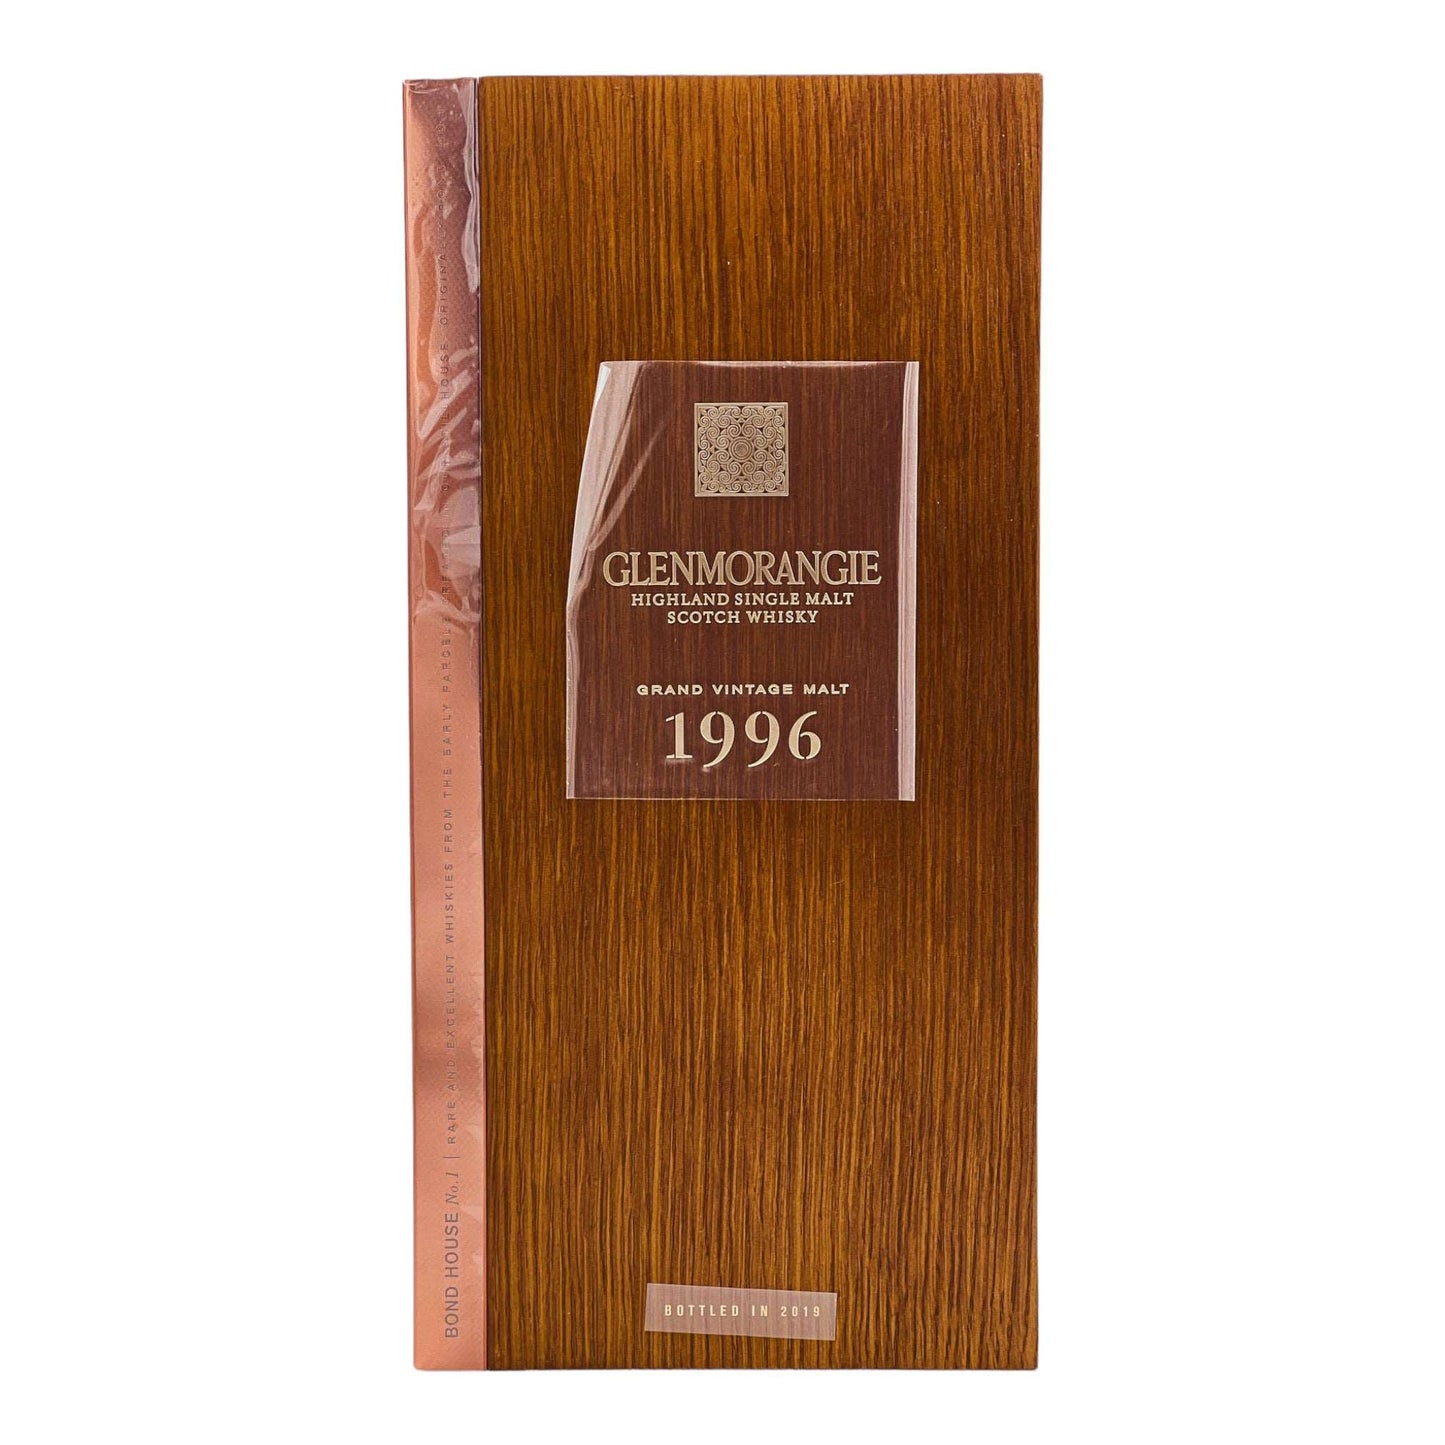 Glenmorangie | 23 Jahre | 1996 Grand Vintage Malt | Limited Release | 0,7l | 43%GET A BOTTLE